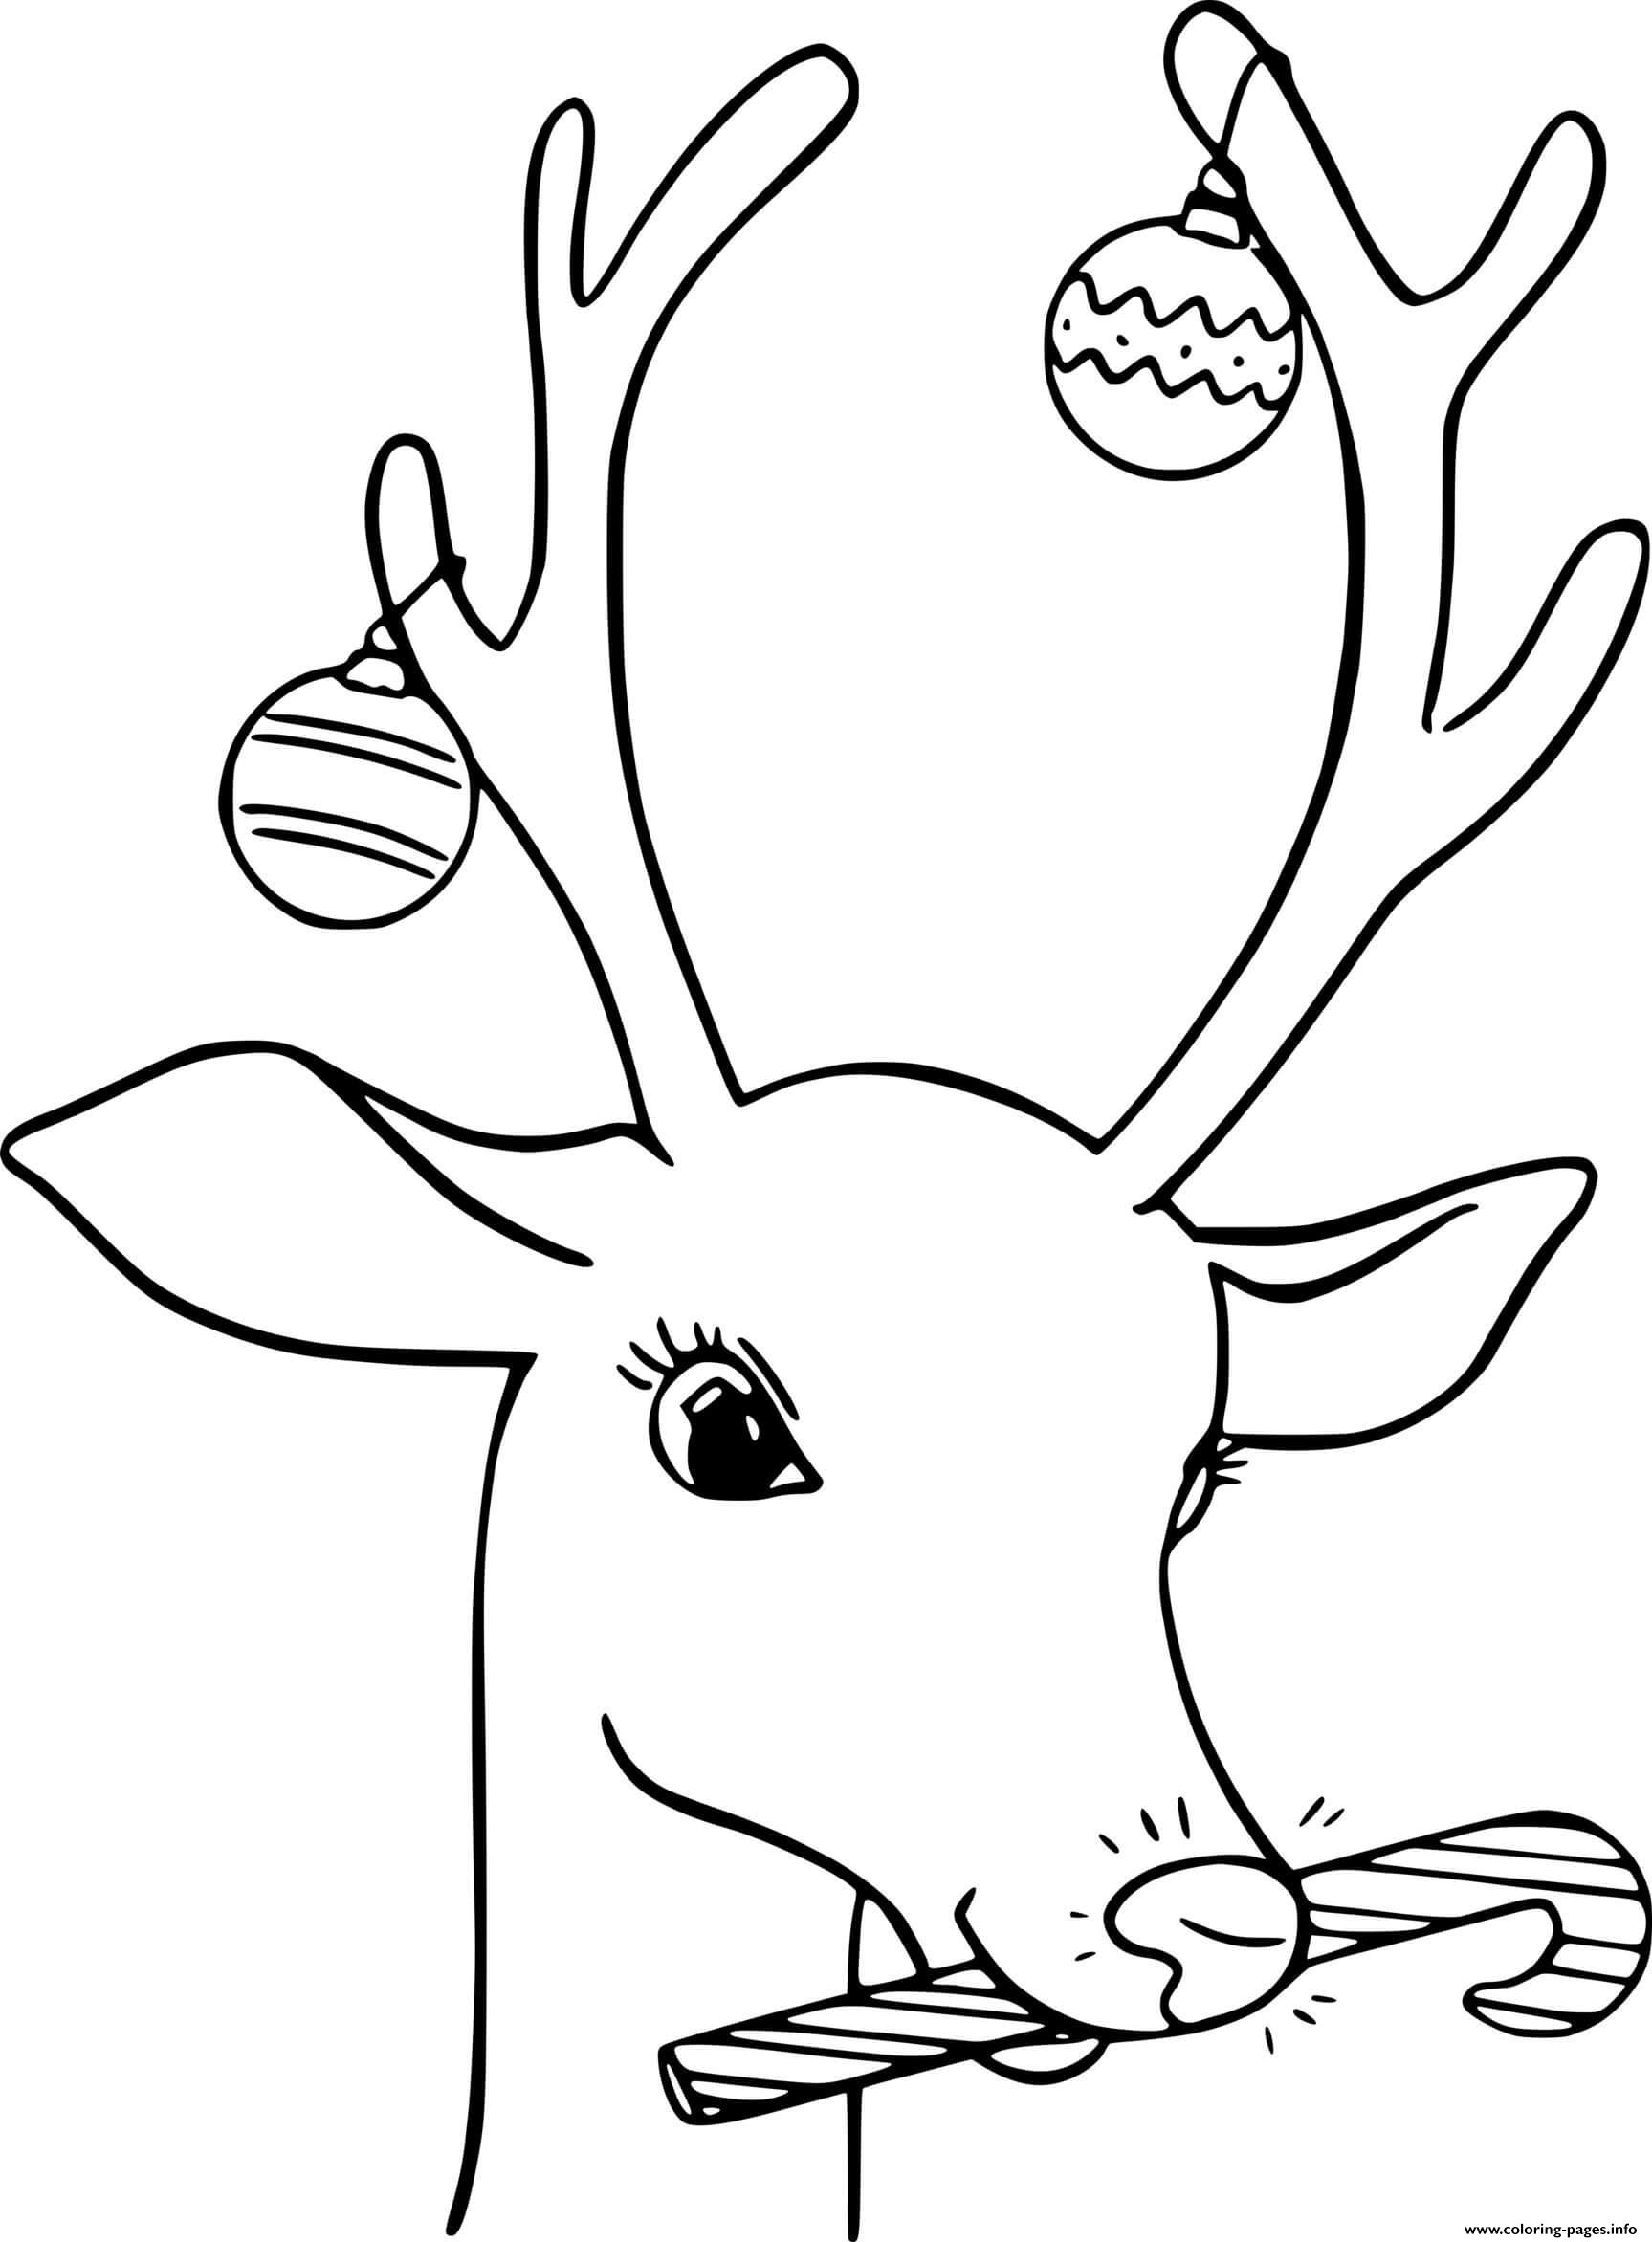 Reindeer Ornaments On Antlers coloring